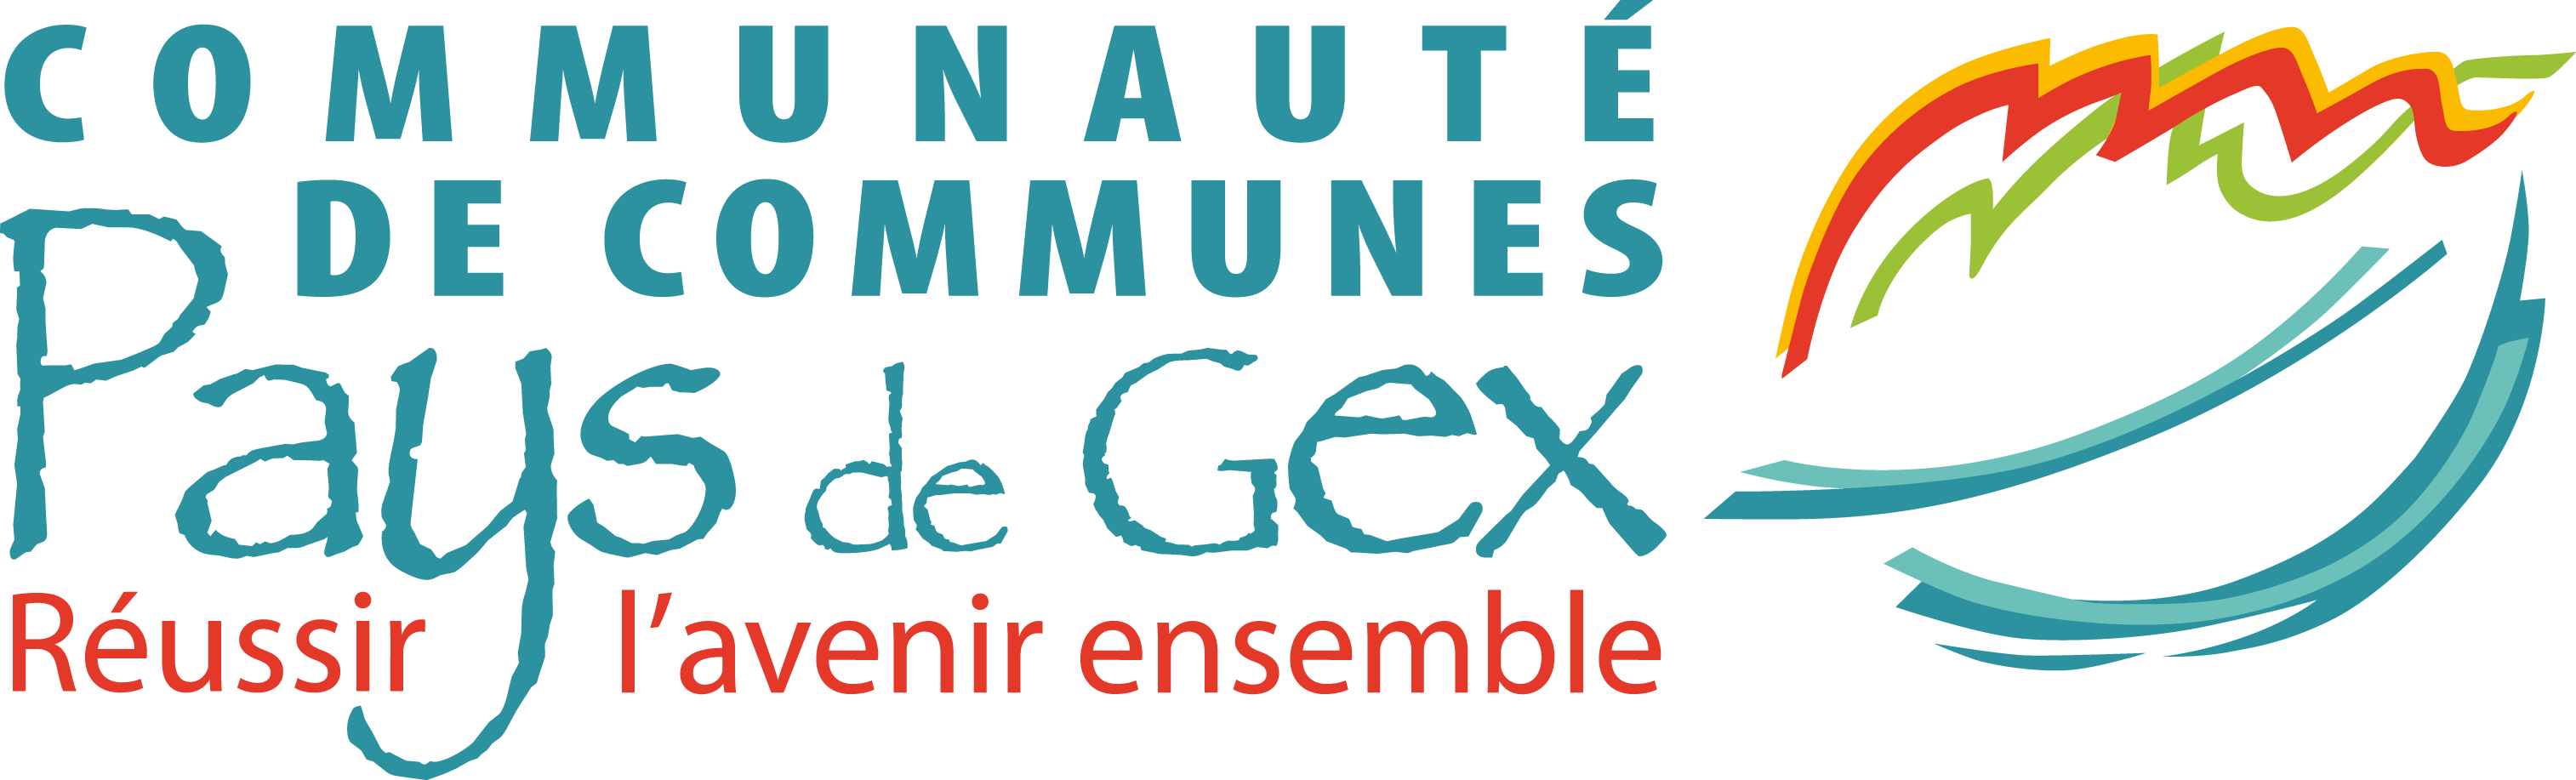 Logo CC-Gex